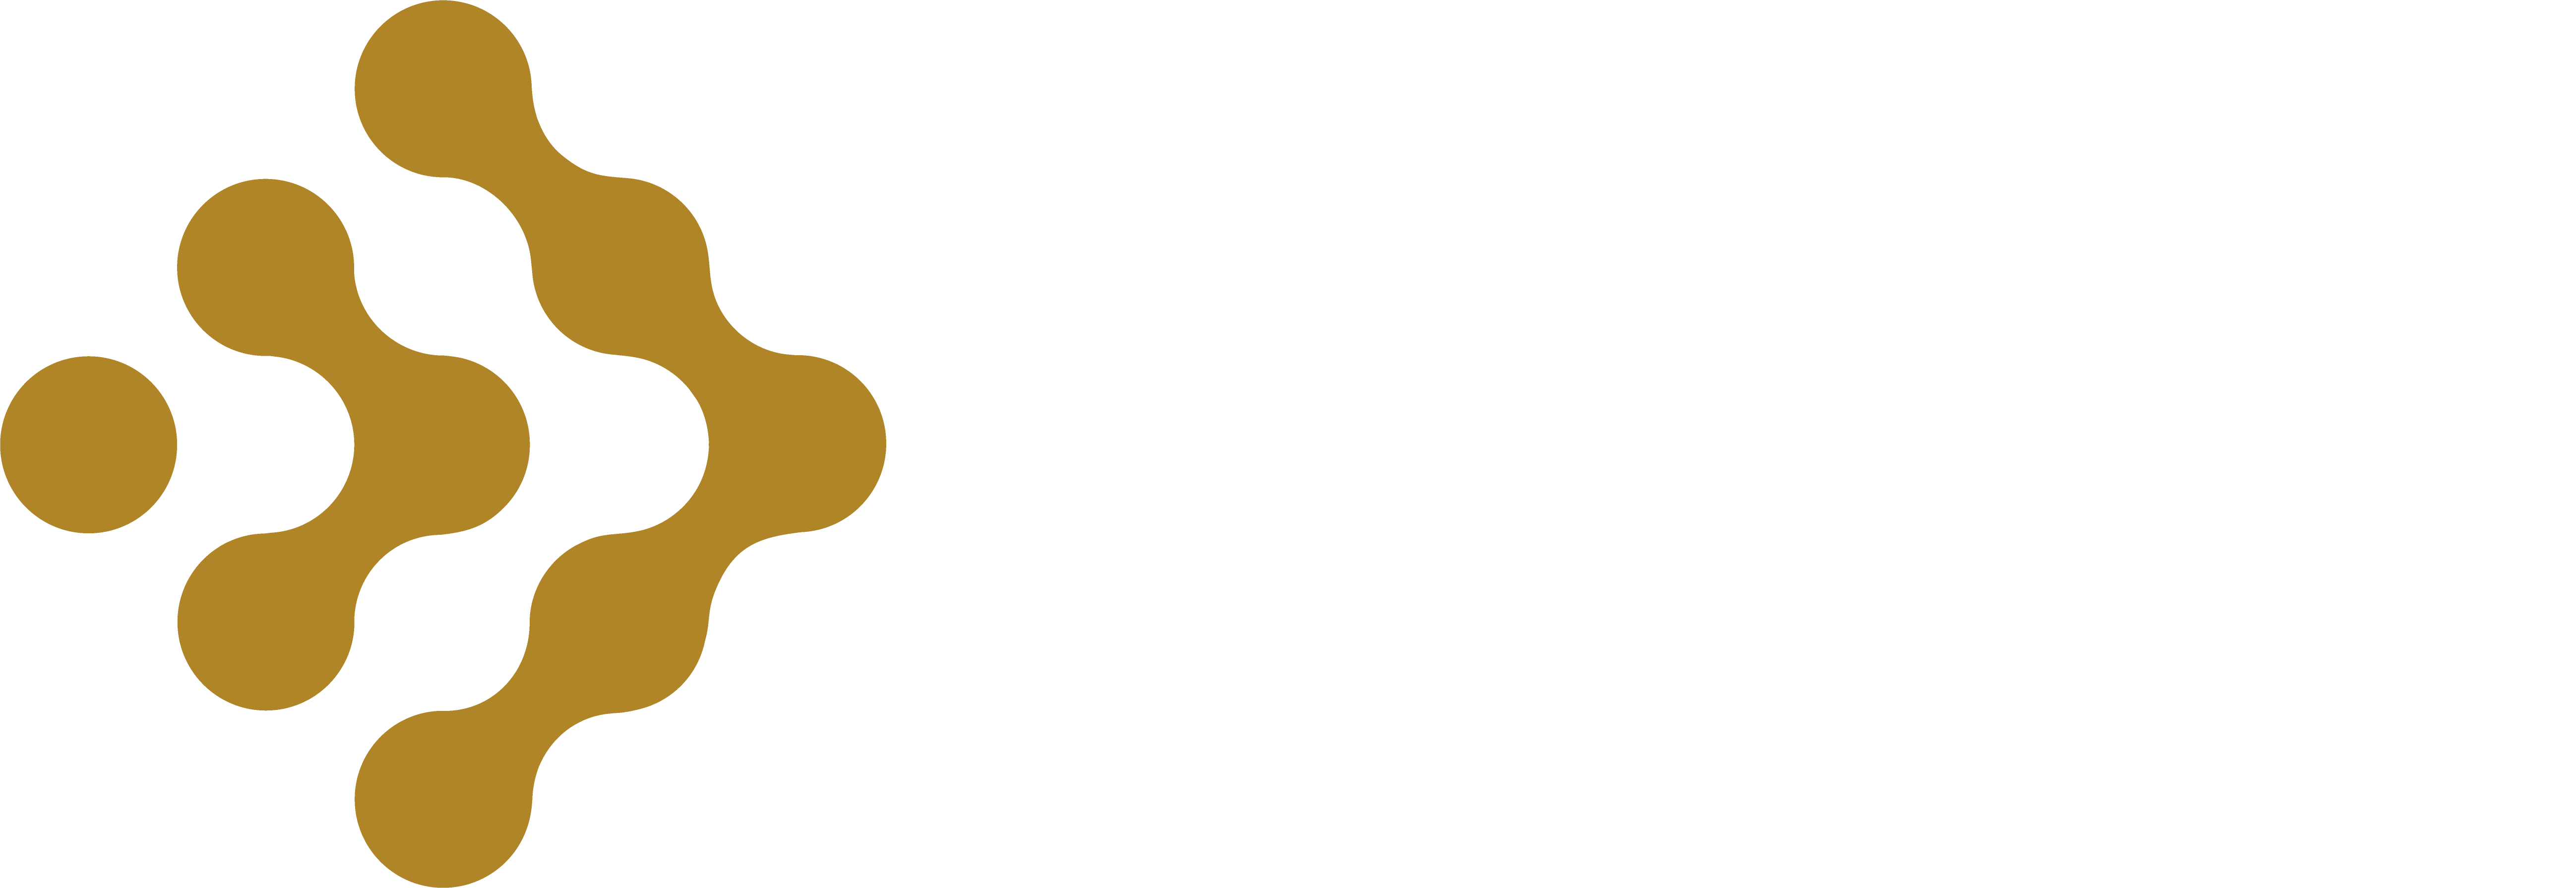 XBT iPlex Ai